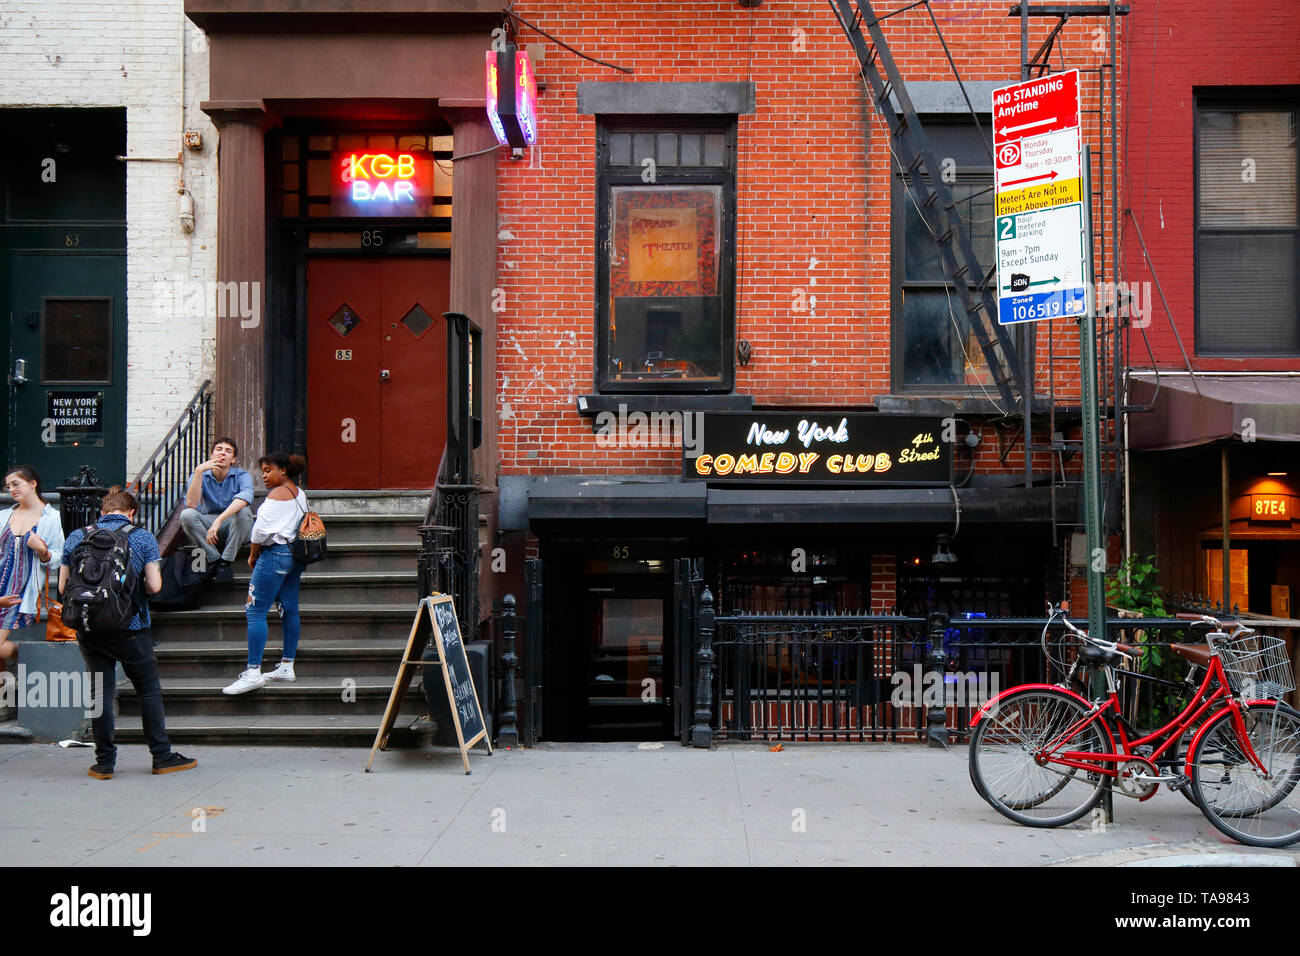 The Red Room, KGB Bar, New York Comedy Club, 85 E 4th St, New York, NYC façade extérieure d'un bar et d'un club de comédie dans l'East Village de Manhattan Banque D'Images